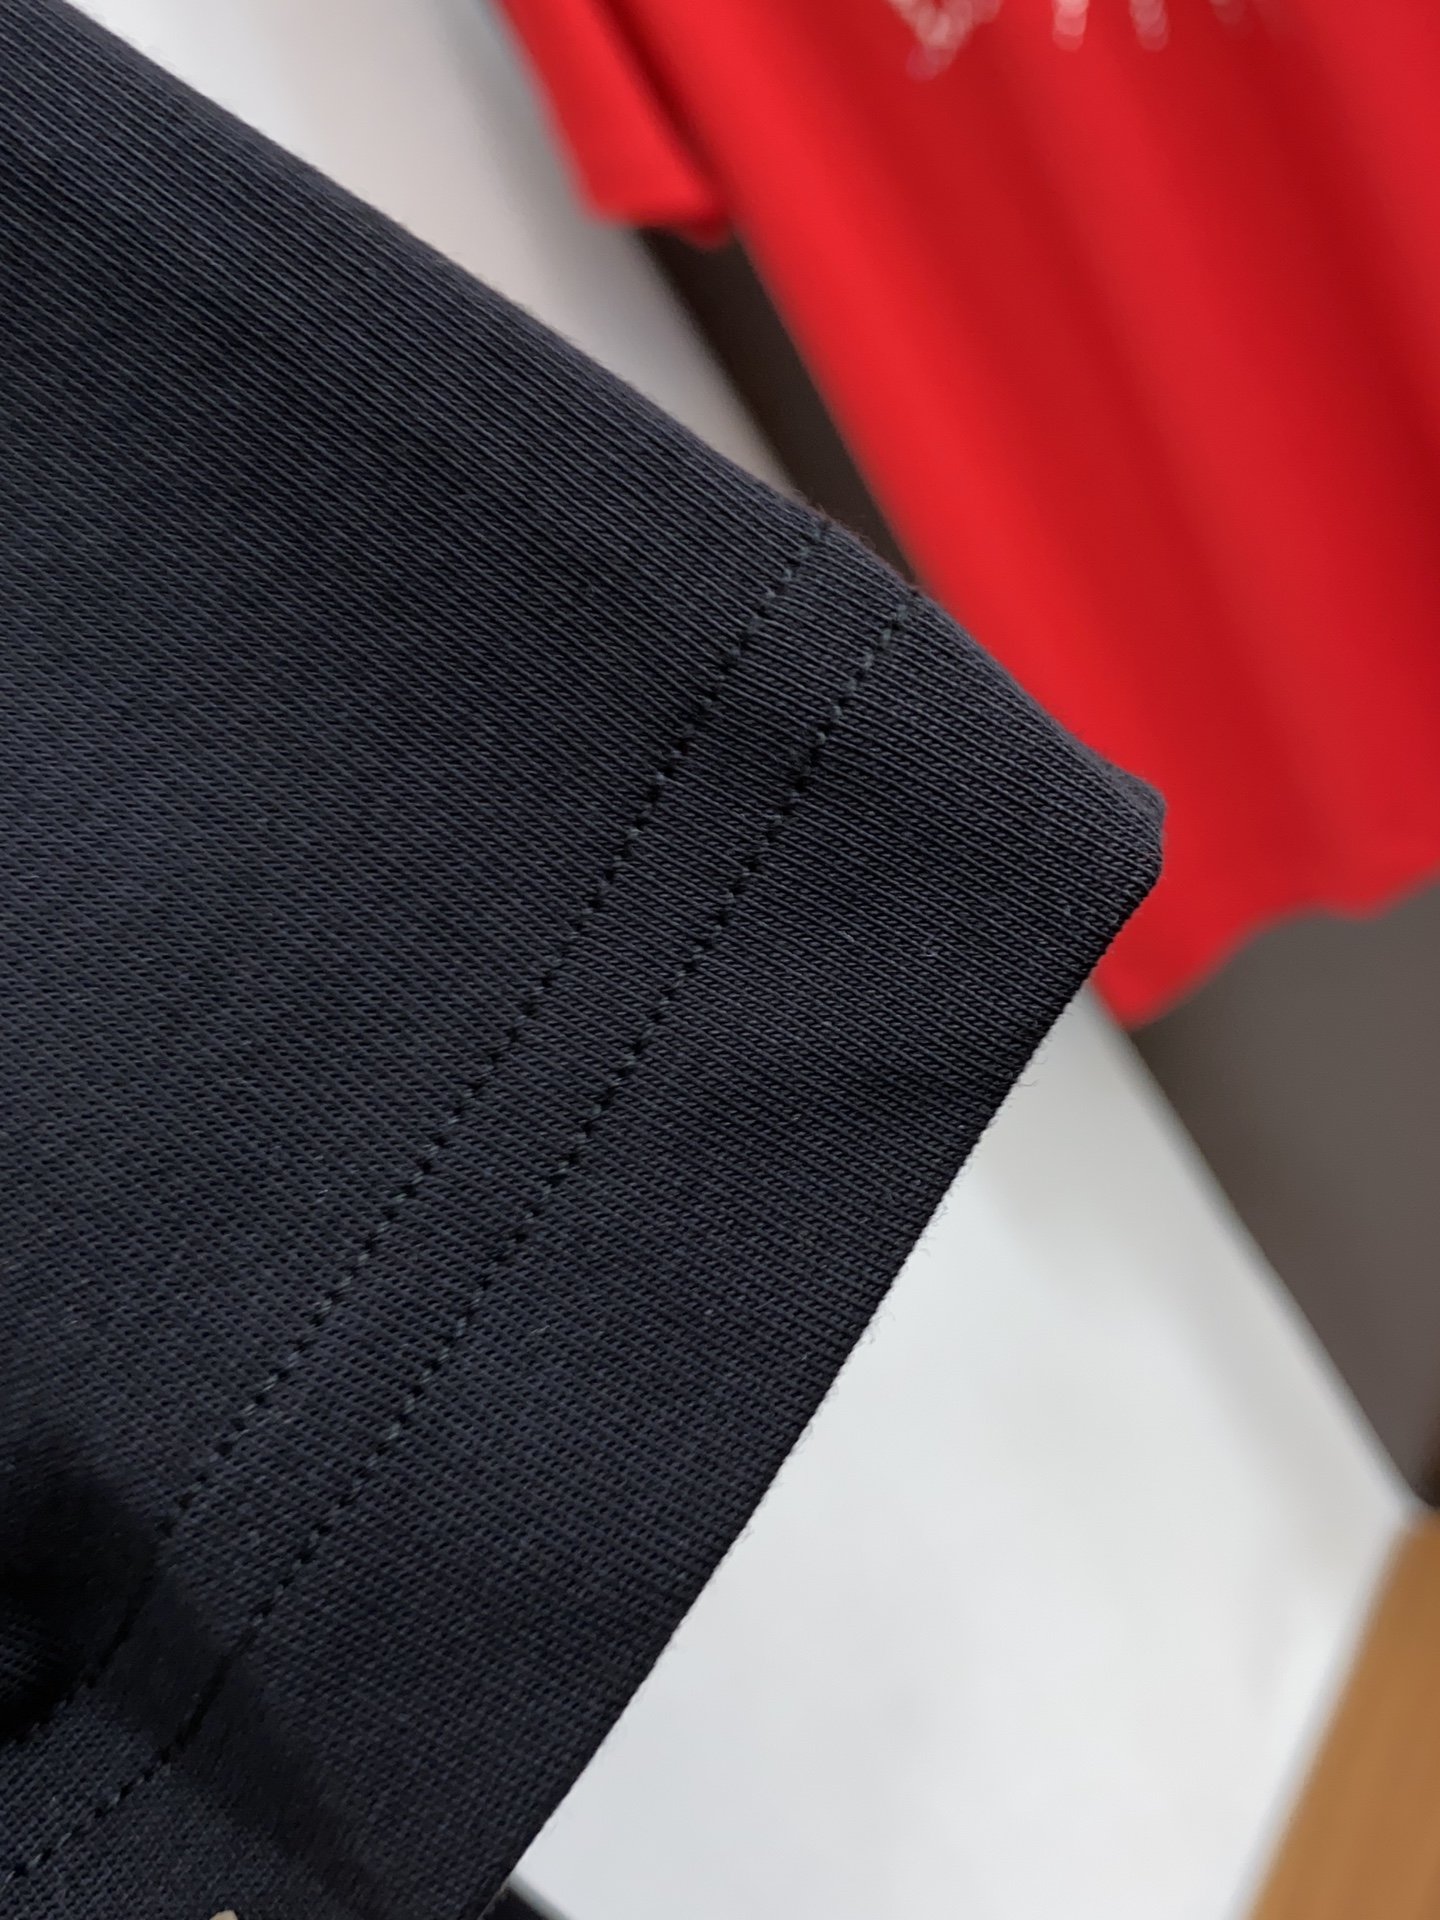 v路易威登S-xL宽松版型24春夏新款圆领宽松烫钻休闲短袖定制高端高克重丝光棉面料黑色红色